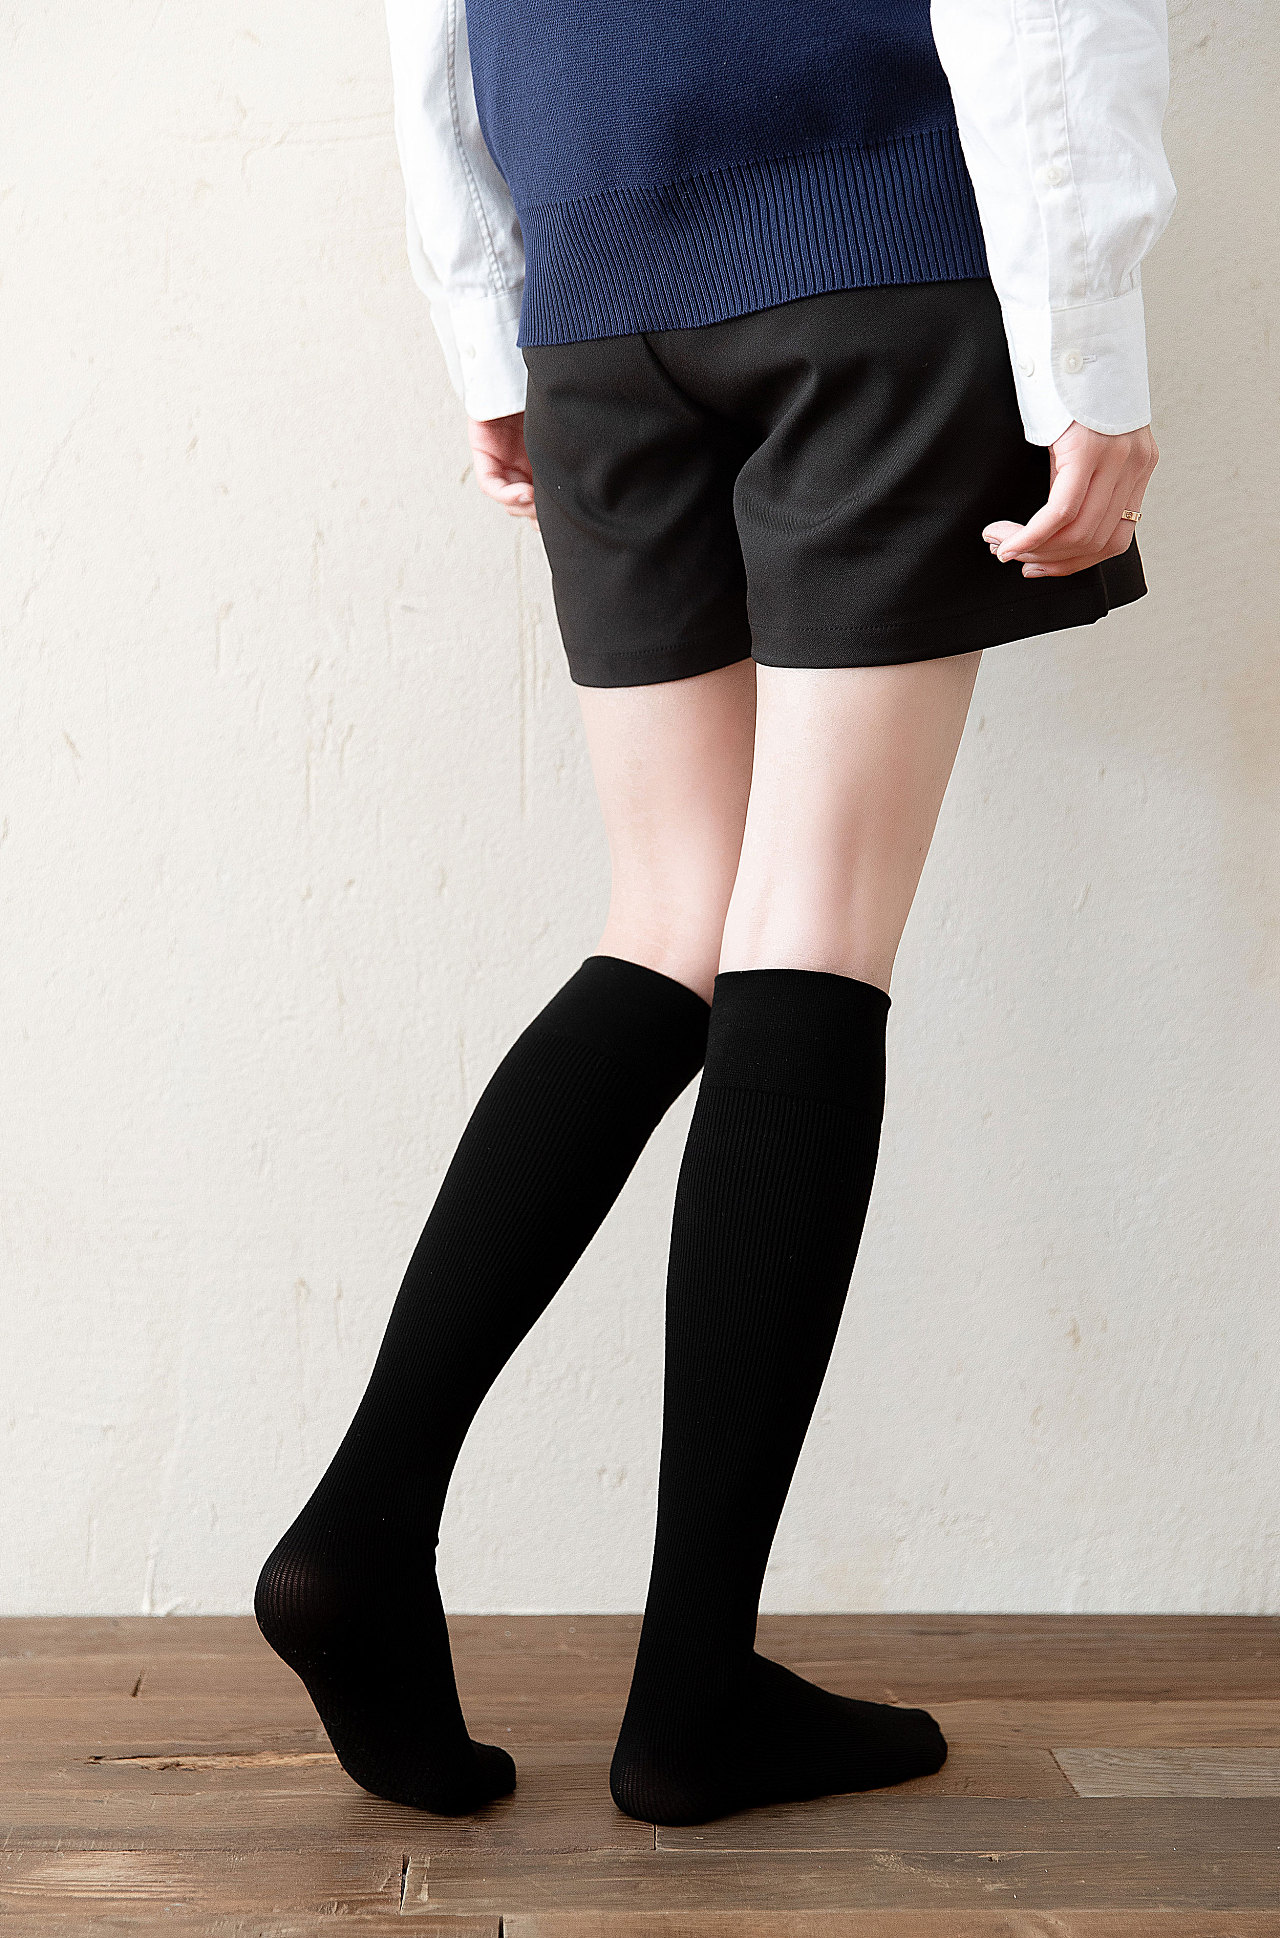 日本的这个睡眠瘦腿袜实际上有什么效果，求解答？ - 知乎